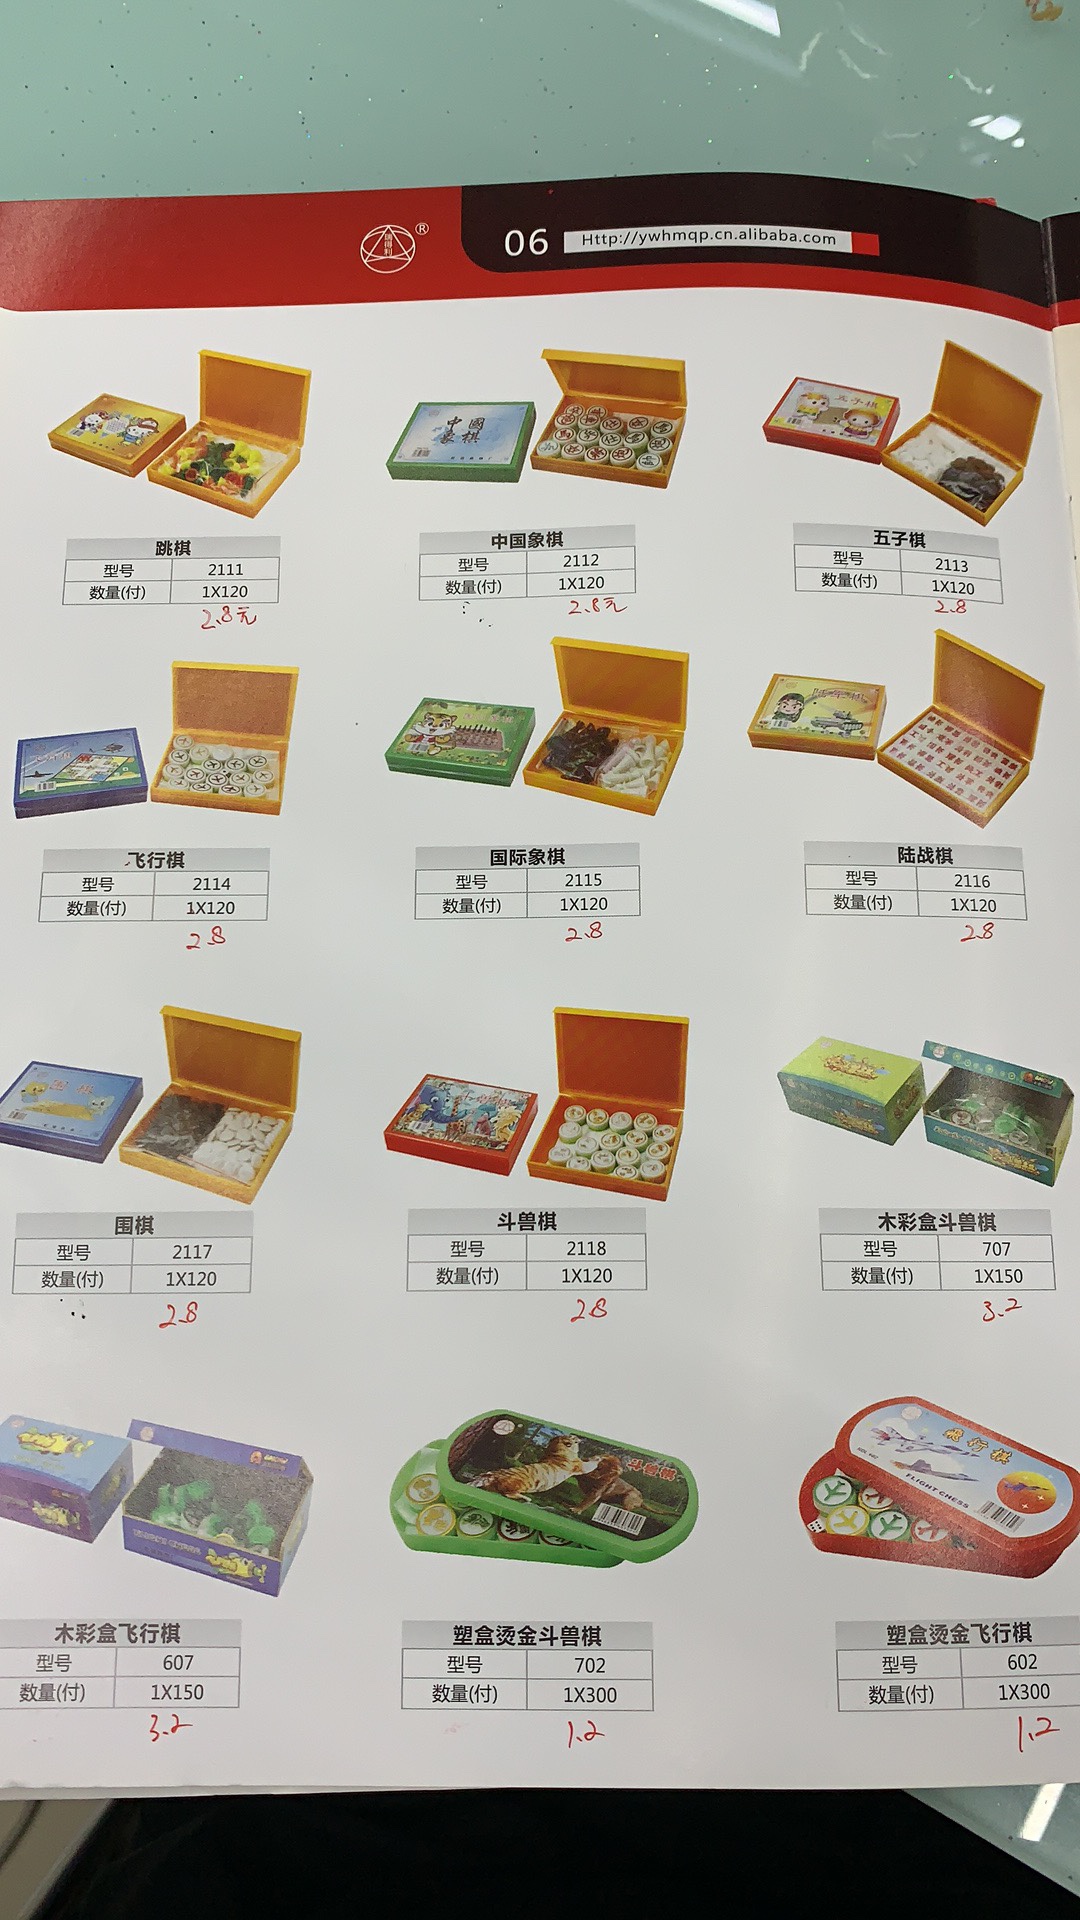 塑料盒装跳棋，中国象棋、五子棋、飞行棋、国际象棋、陆军棋、围棋、斗兽棋产品图